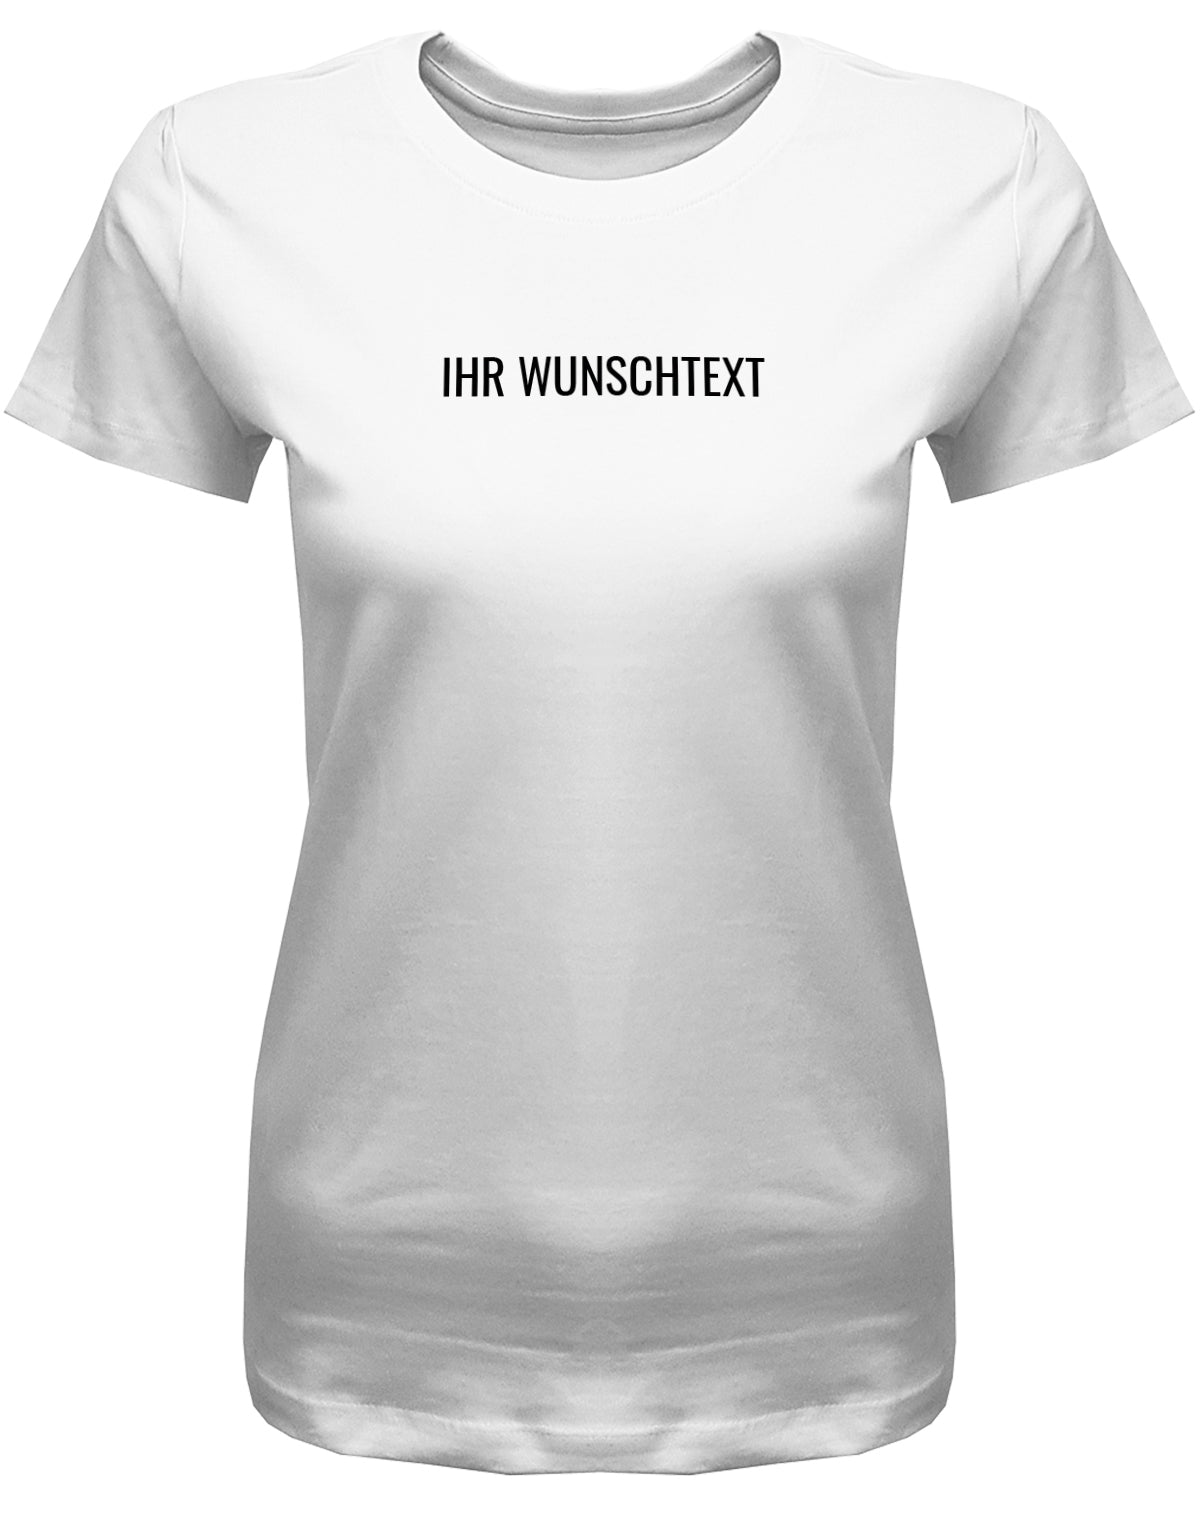 Frauen Tshirt mit Wunschtext. Minimalistisches Design. Weiss